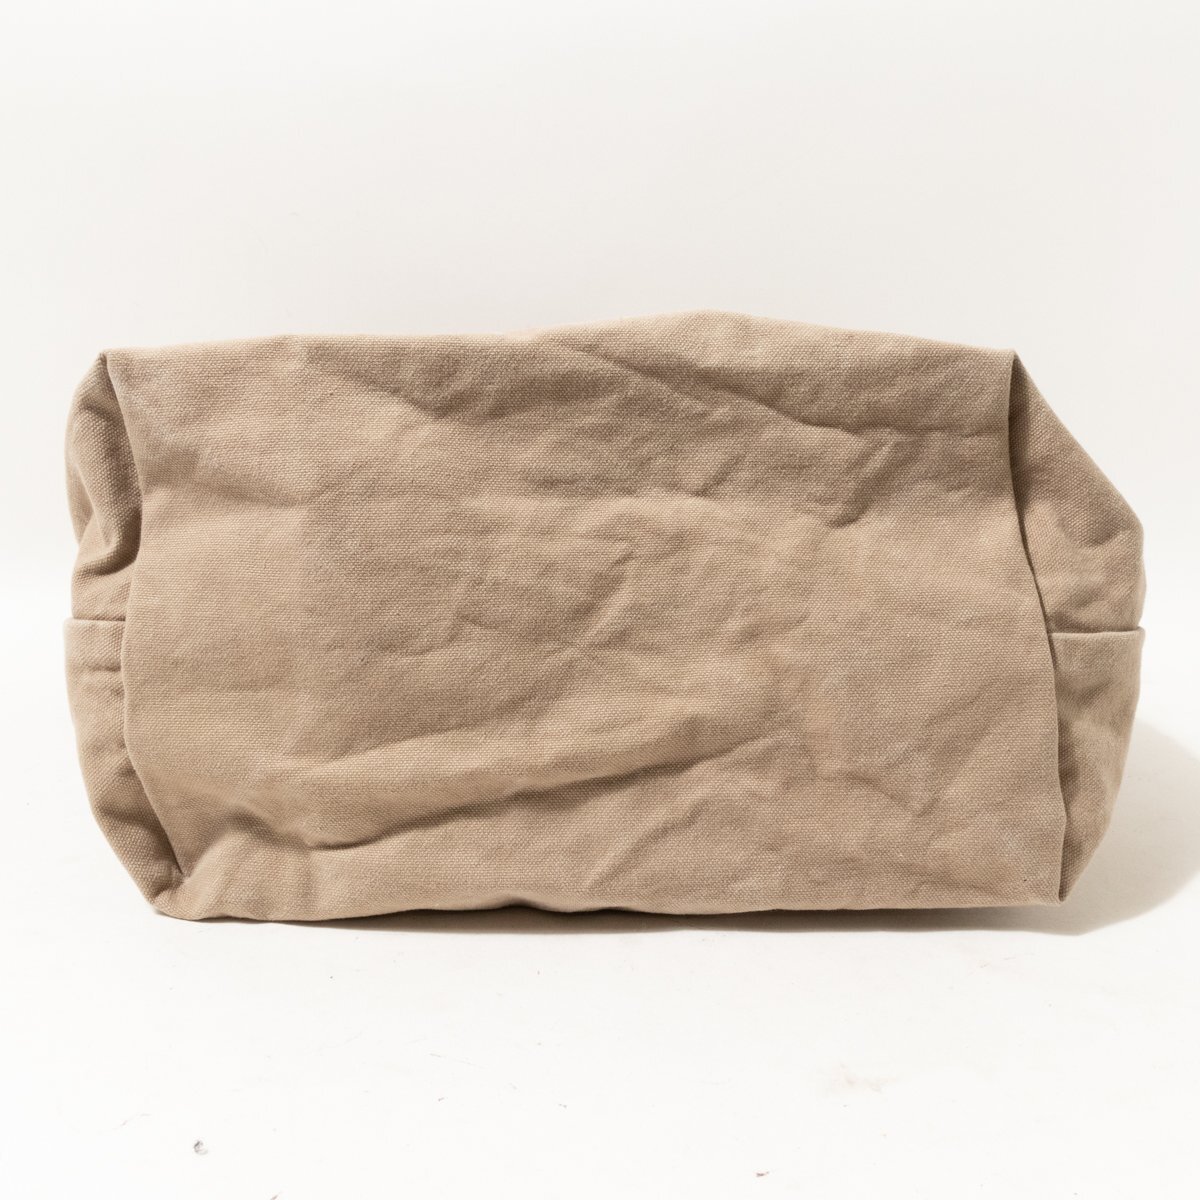 CLASKA Gallery & Shop ~DO~ Class ka shoulder bag tote bag shoulder .. bag diagonal .. made in Japan cotton 100% beige natural simple 